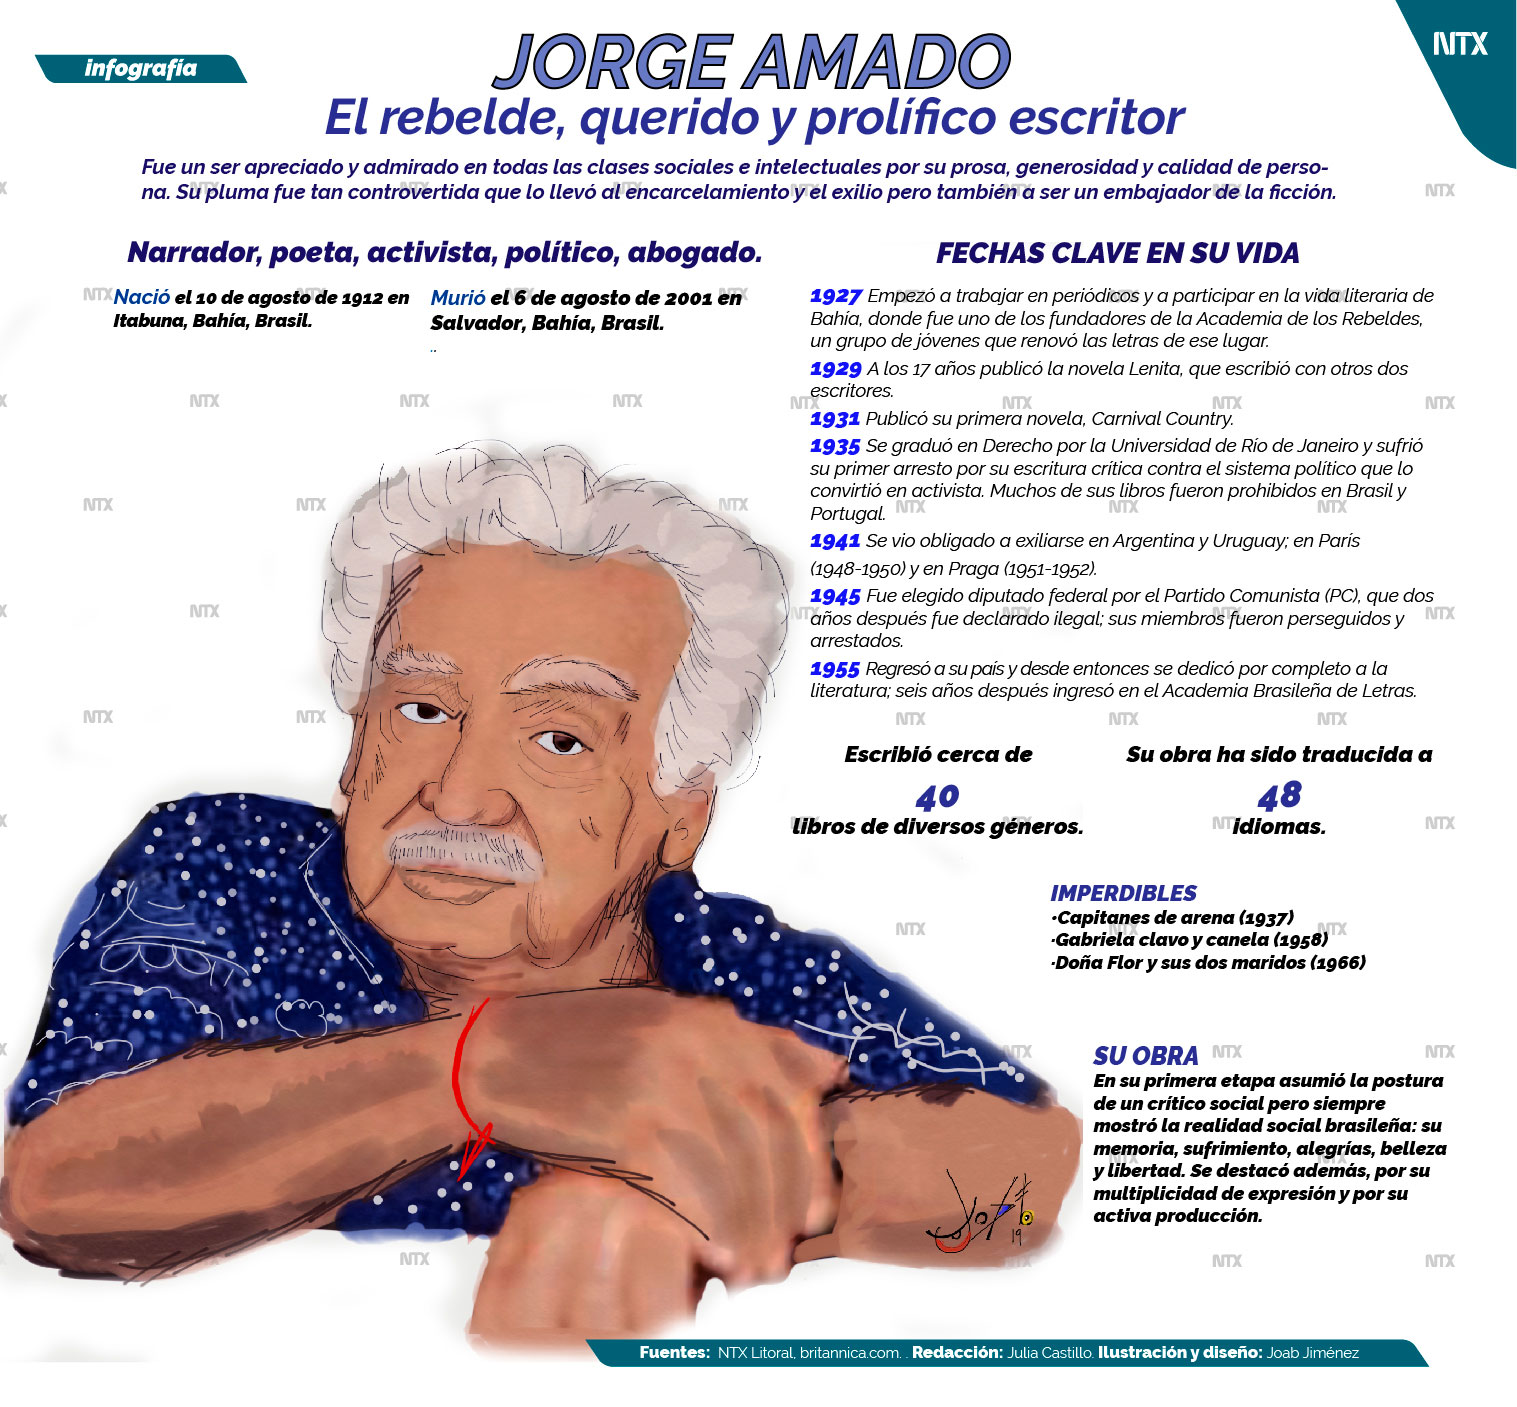 Jorge Amado, el rebelde querido y prolfico escritor